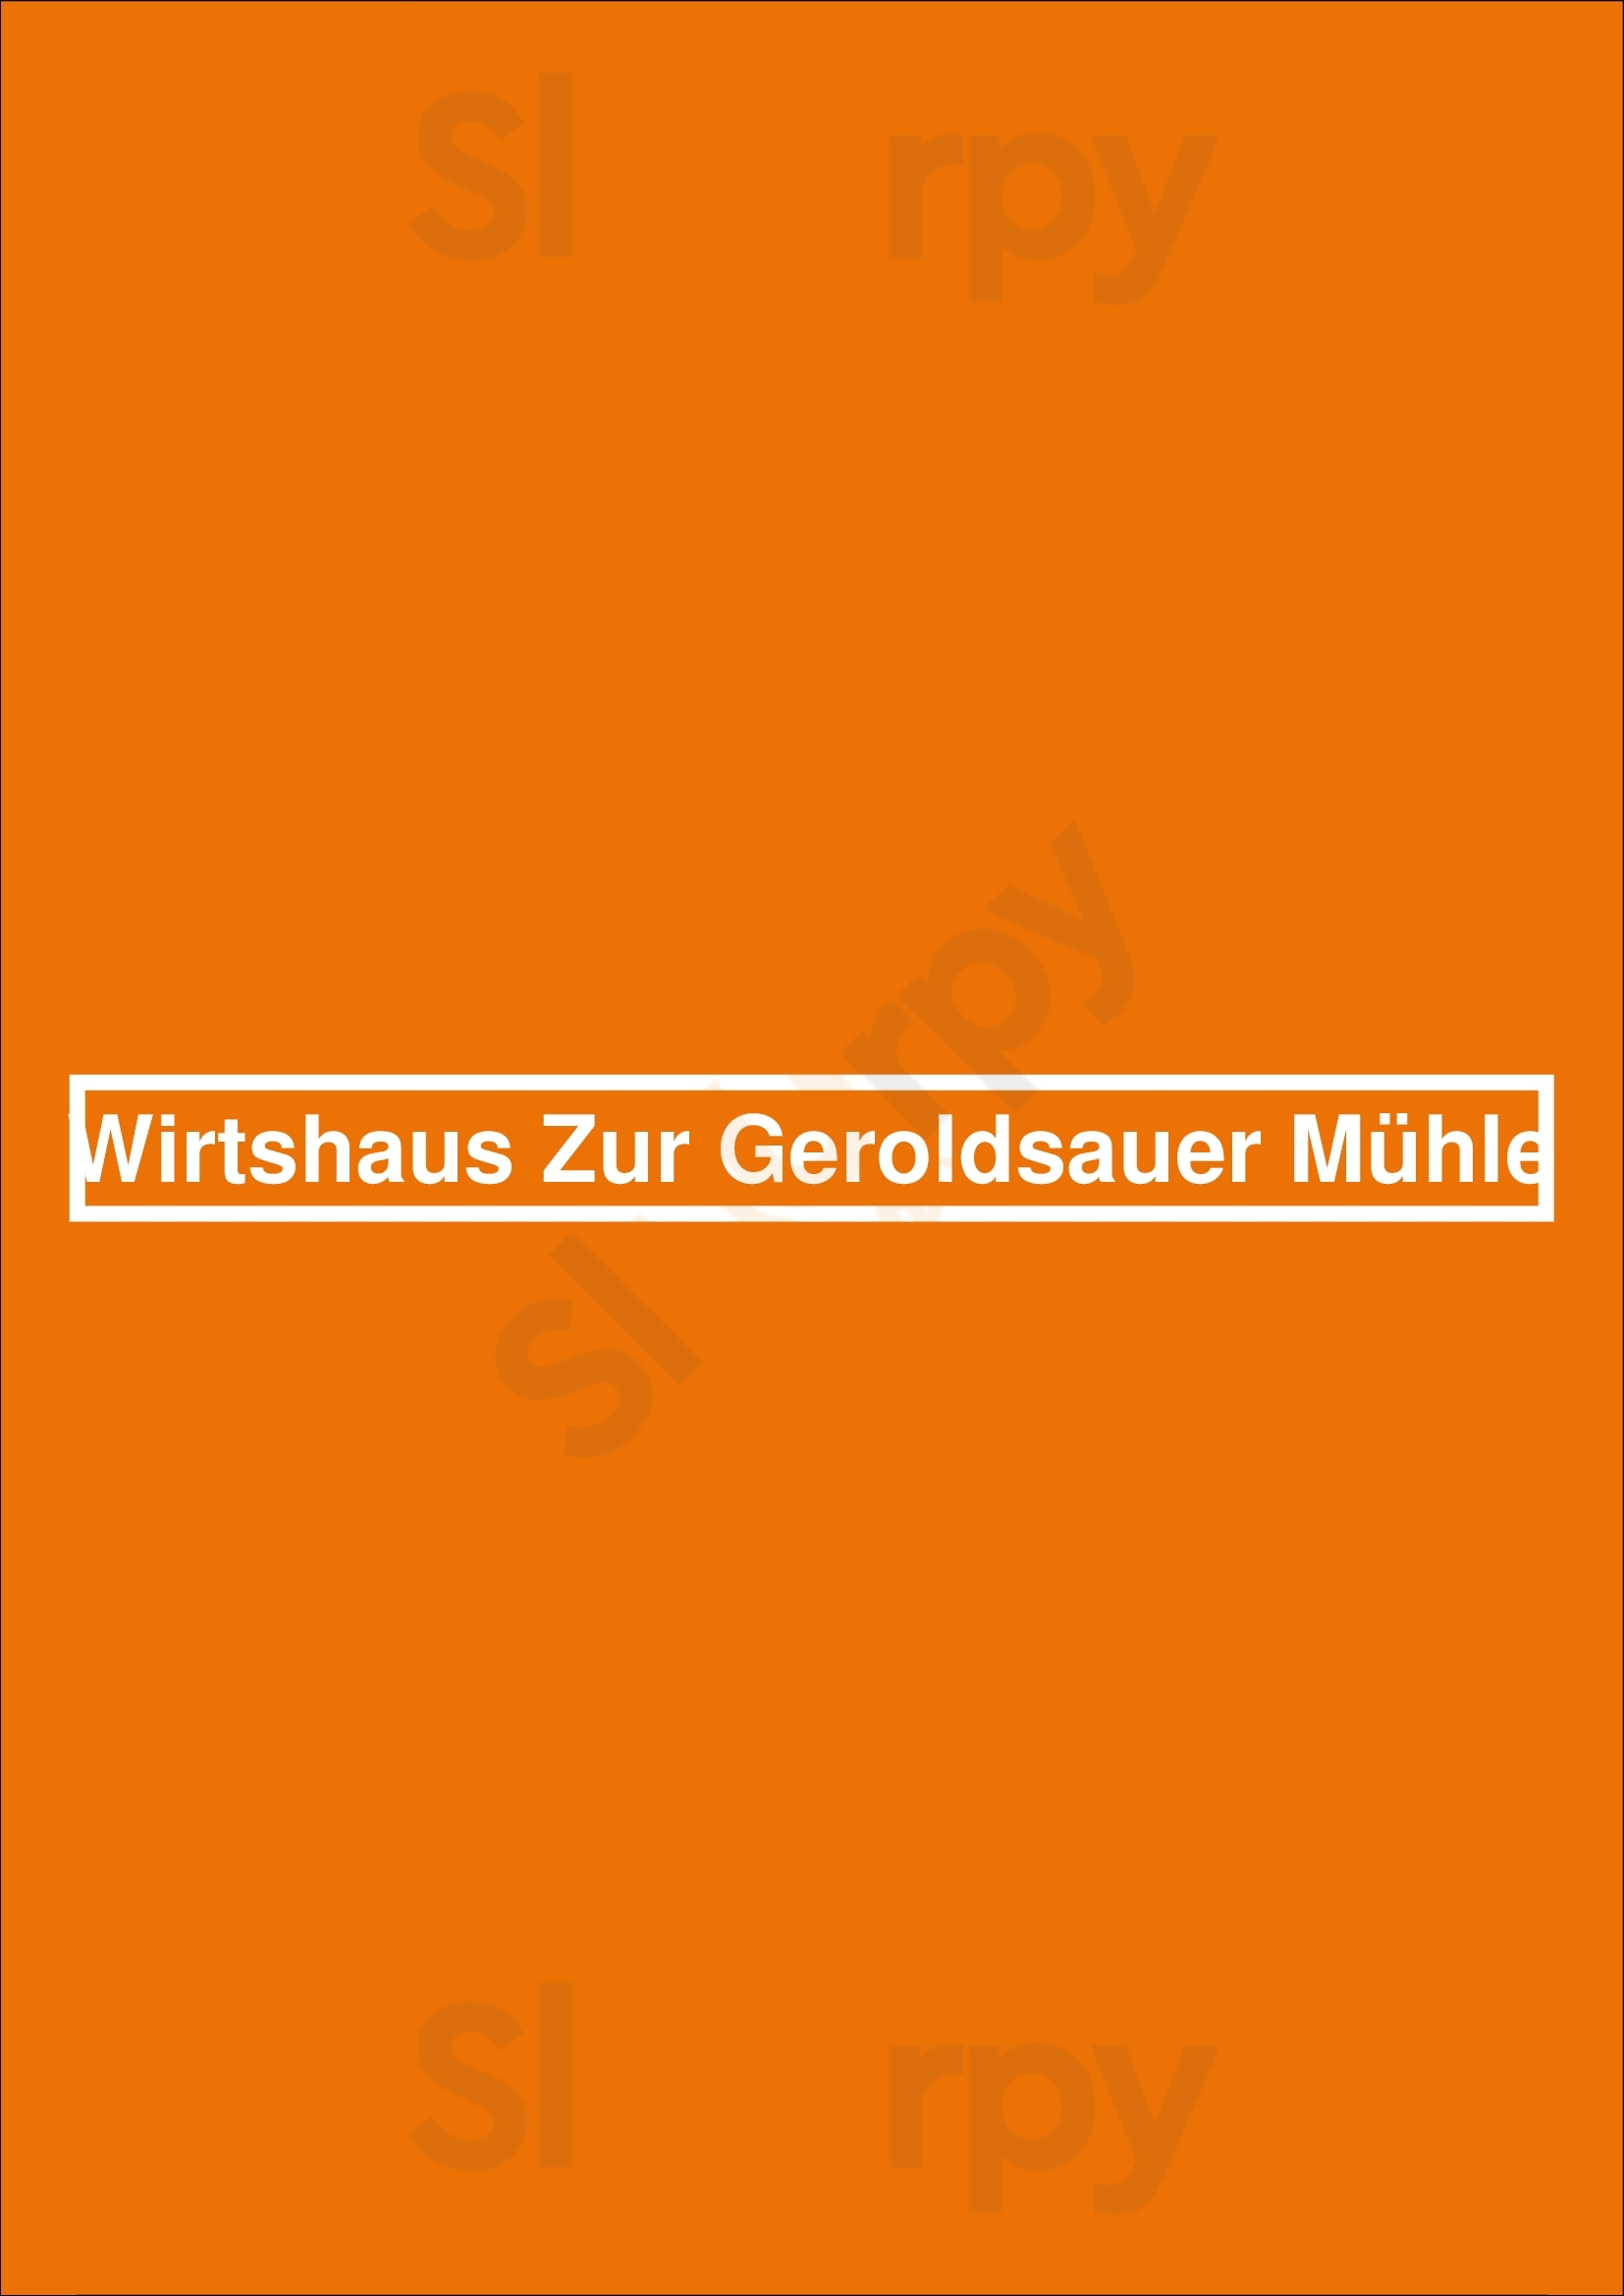 Wirtshaus Zur Geroldsauer Mühle Baden-Baden Menu - 1